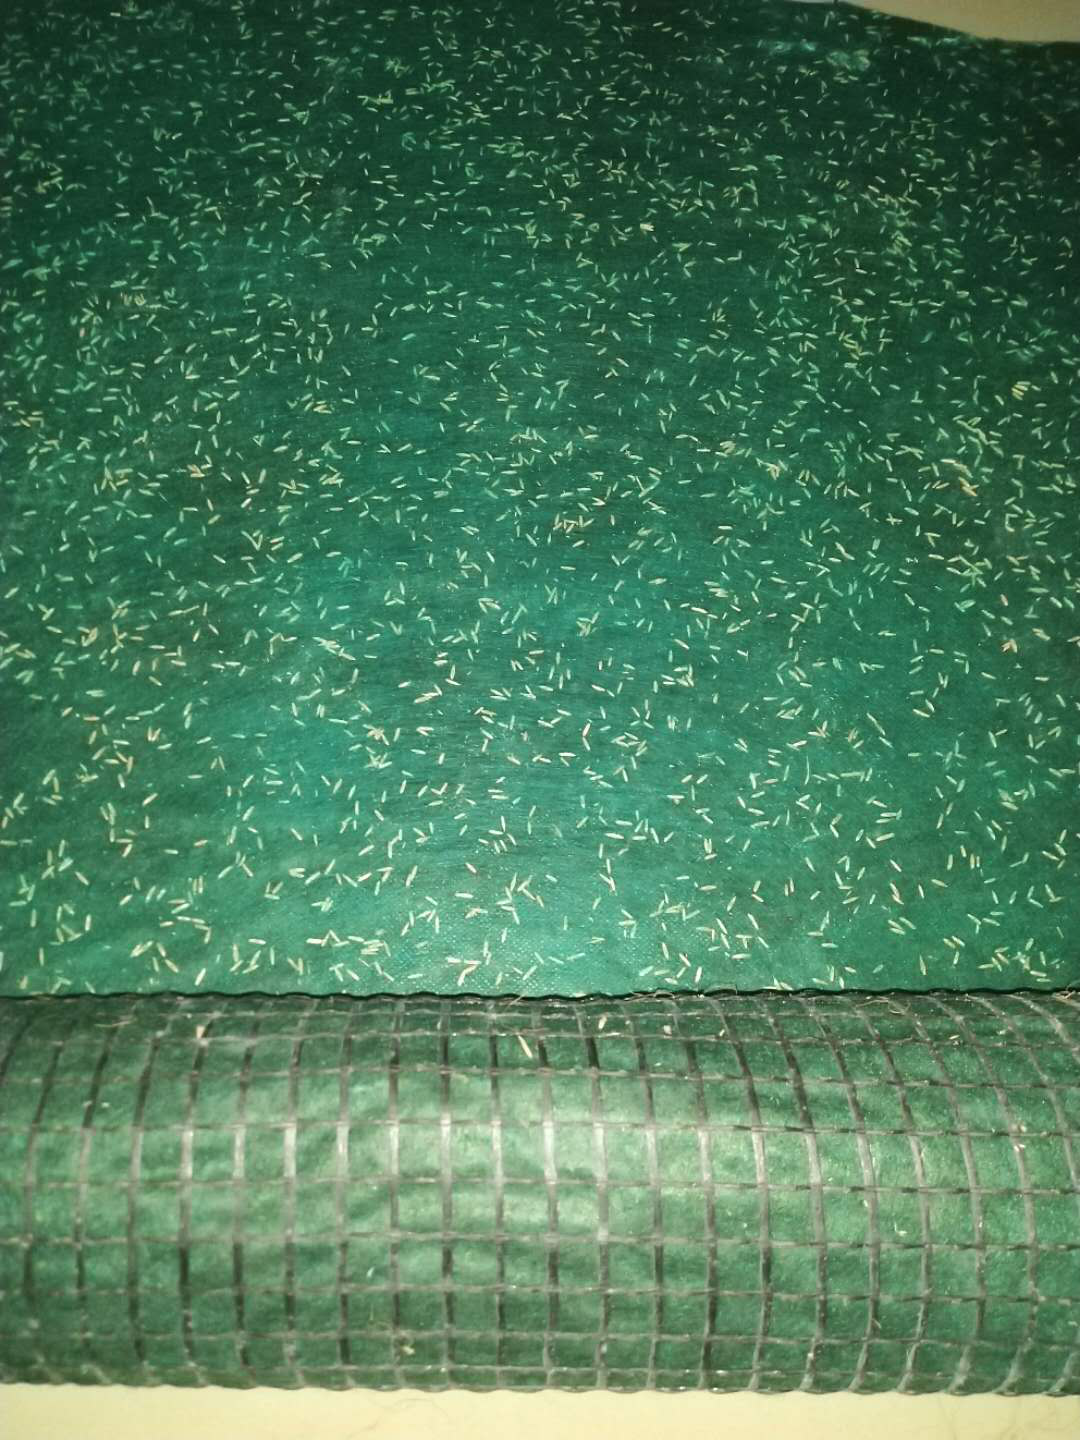 潍坊绿源厂家直销 山清水秀毯 欢迎订购 生产抗冲生物毯 品质可靠 护坡抗冲生态毯8